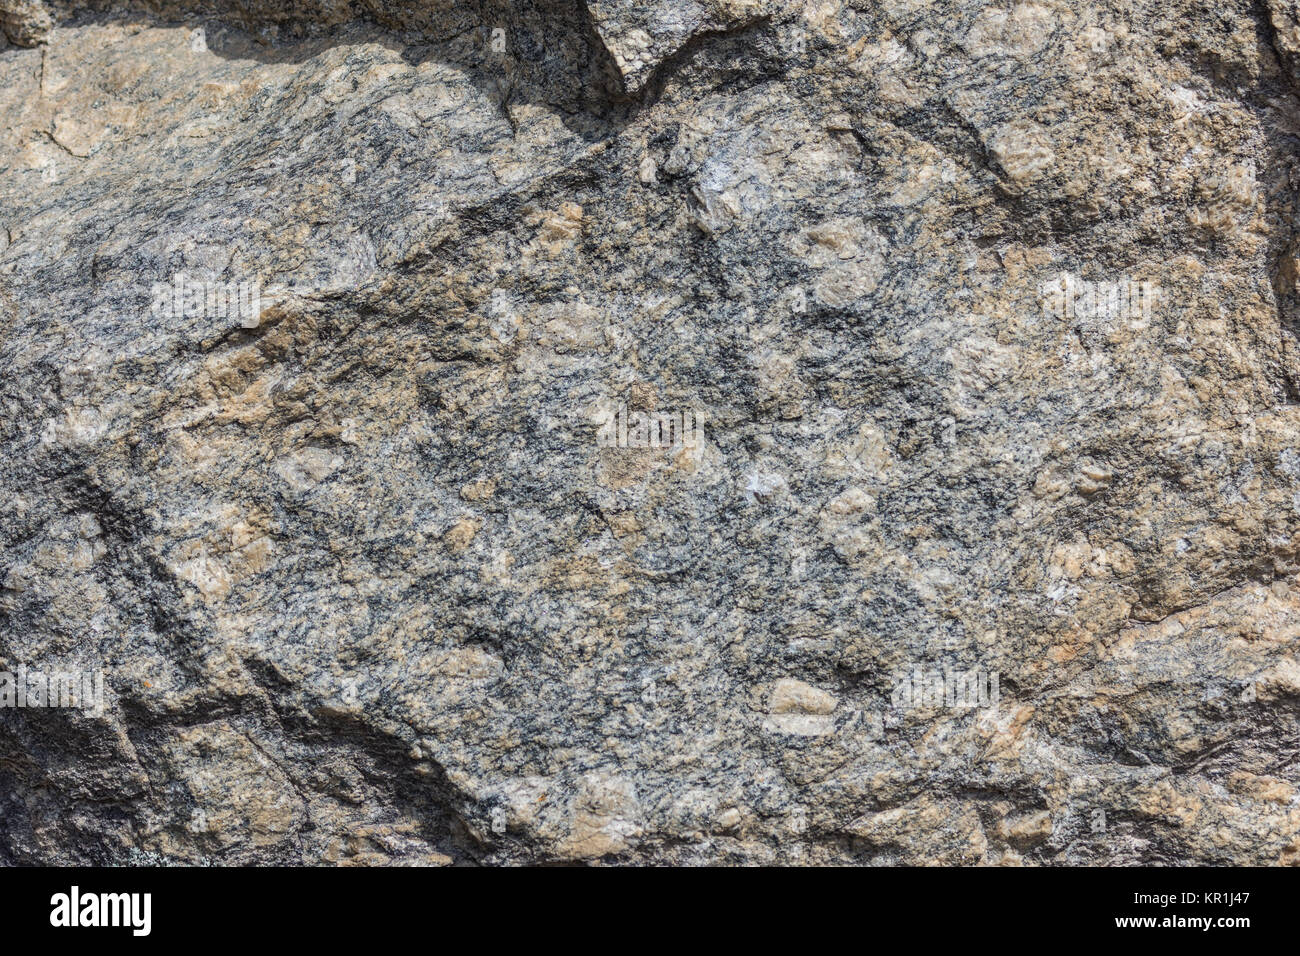 Gros cristaux de feldspath de gneiss granitique précambrienne en affleurement. Madagascar, l'Afrique. Banque D'Images